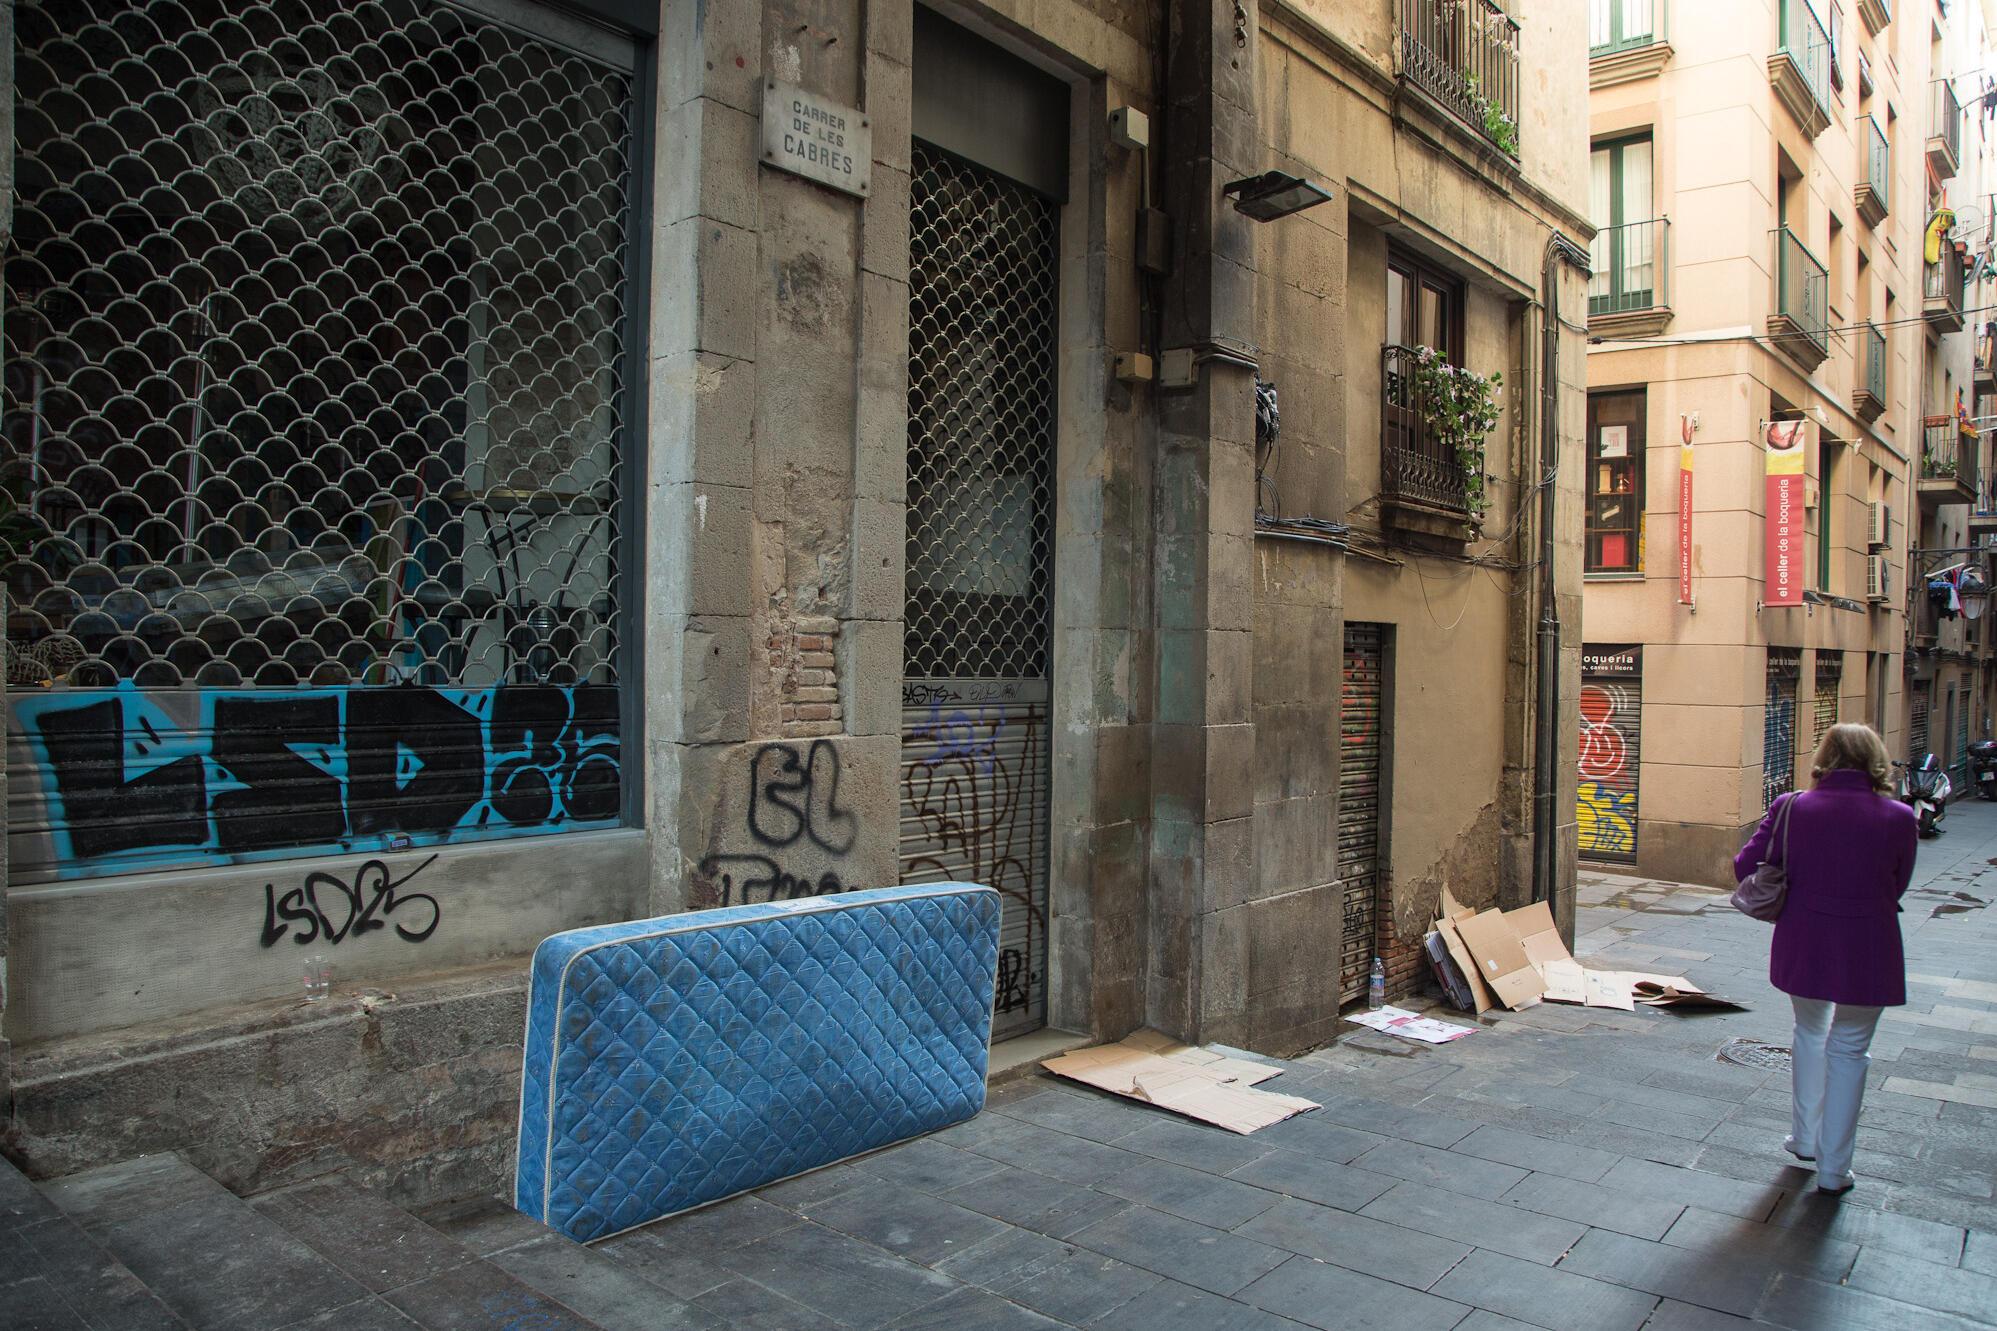 Imatge d'un matalàs i cartrons al carrer de persones sense llar